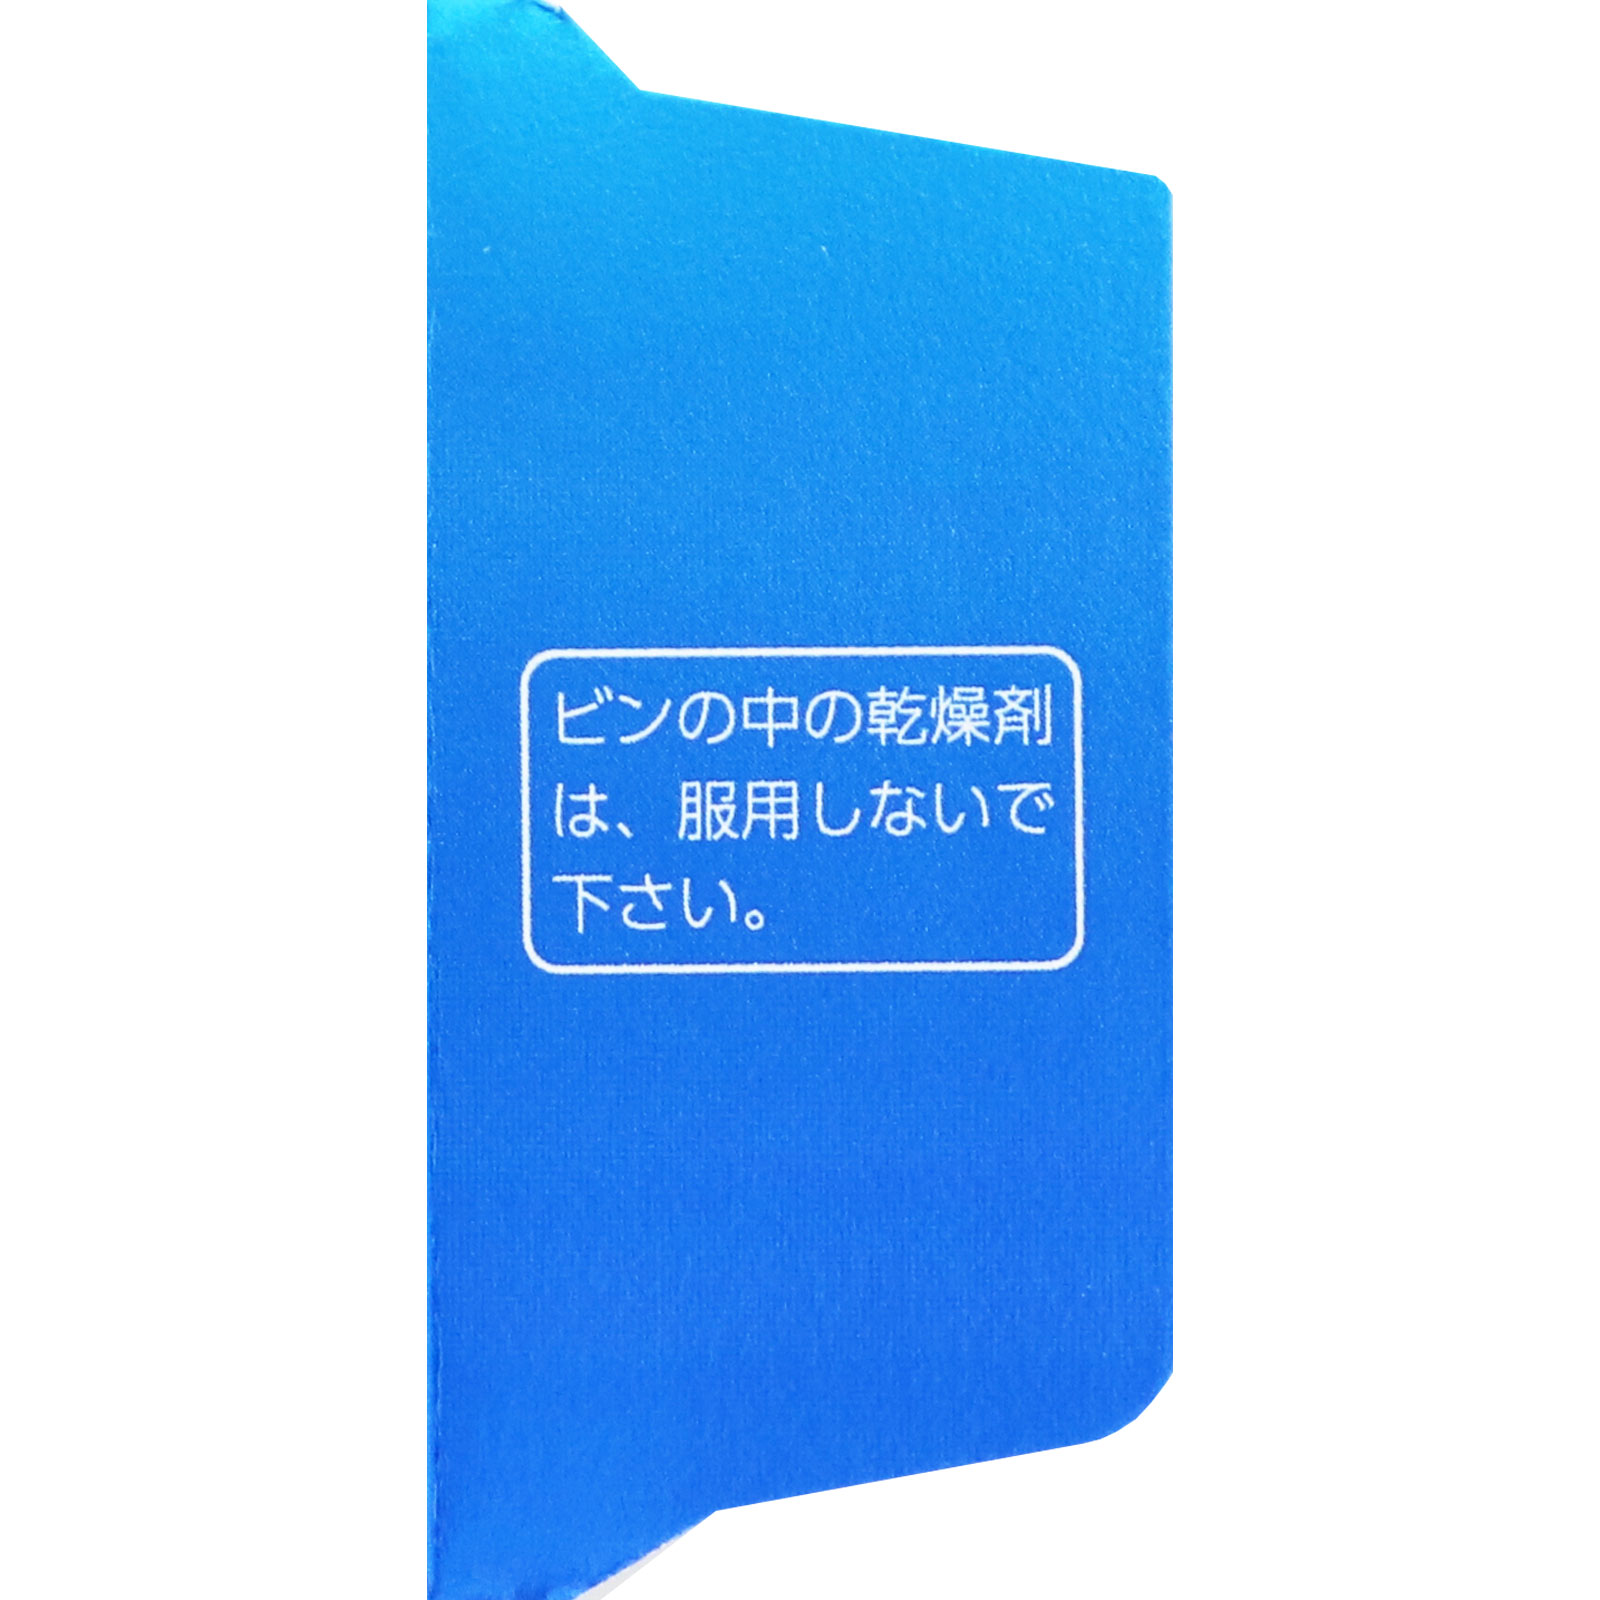 matsukiyo エバレッシュホワイトEX II ２７０錠 【第3類医薬品】